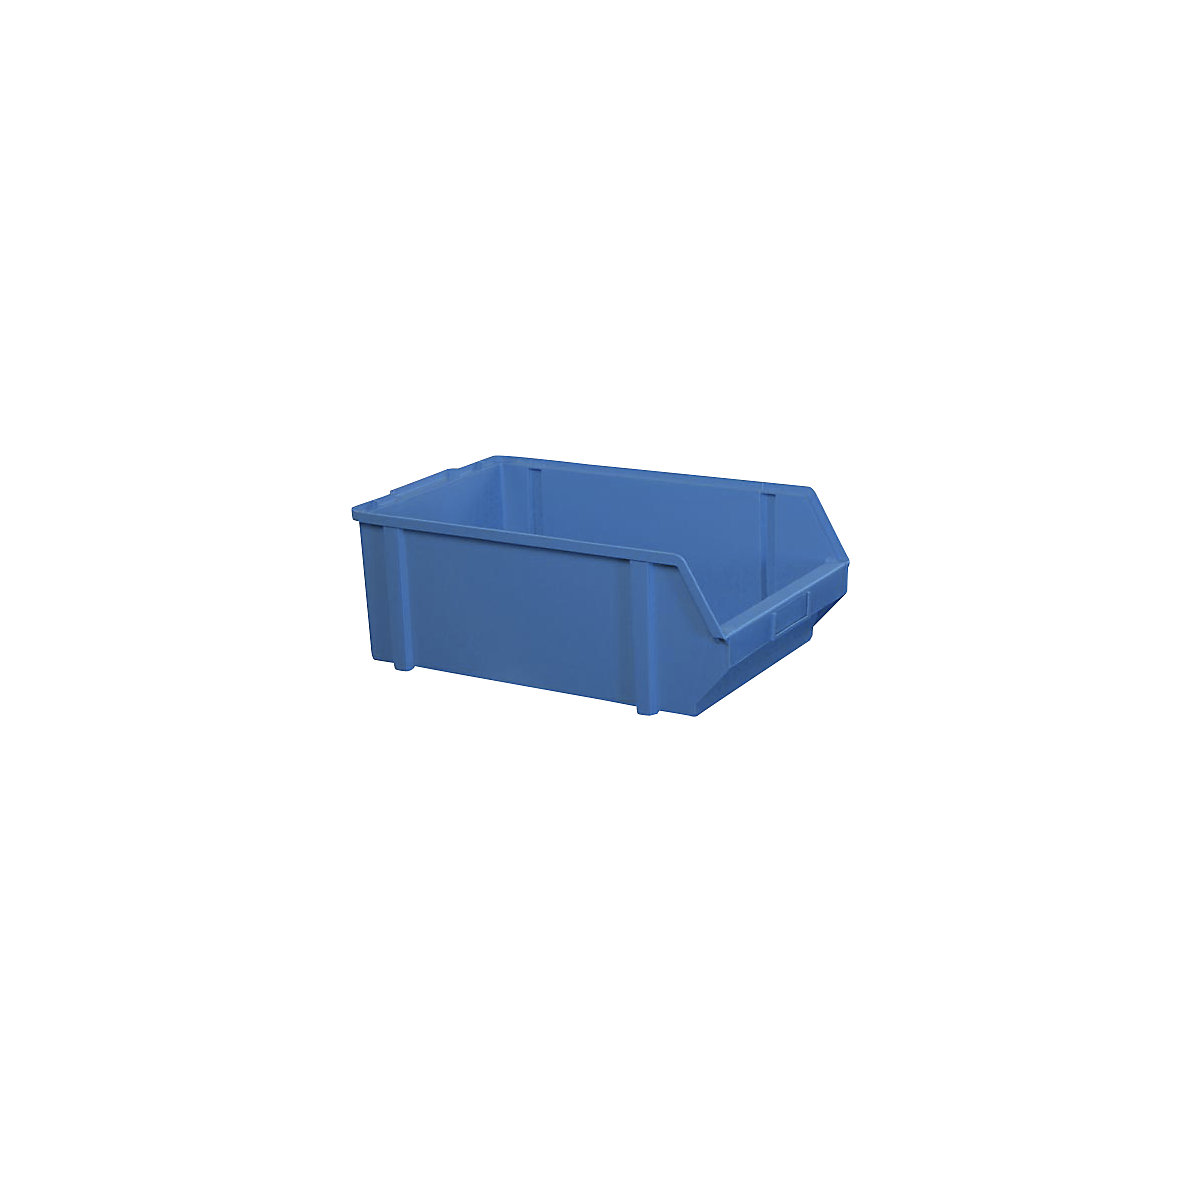 Sichtlagerkasten aus Polystyrol, Länge 500 mm, BxH 303 x 180 mm, VE 5 Stk, blau-19